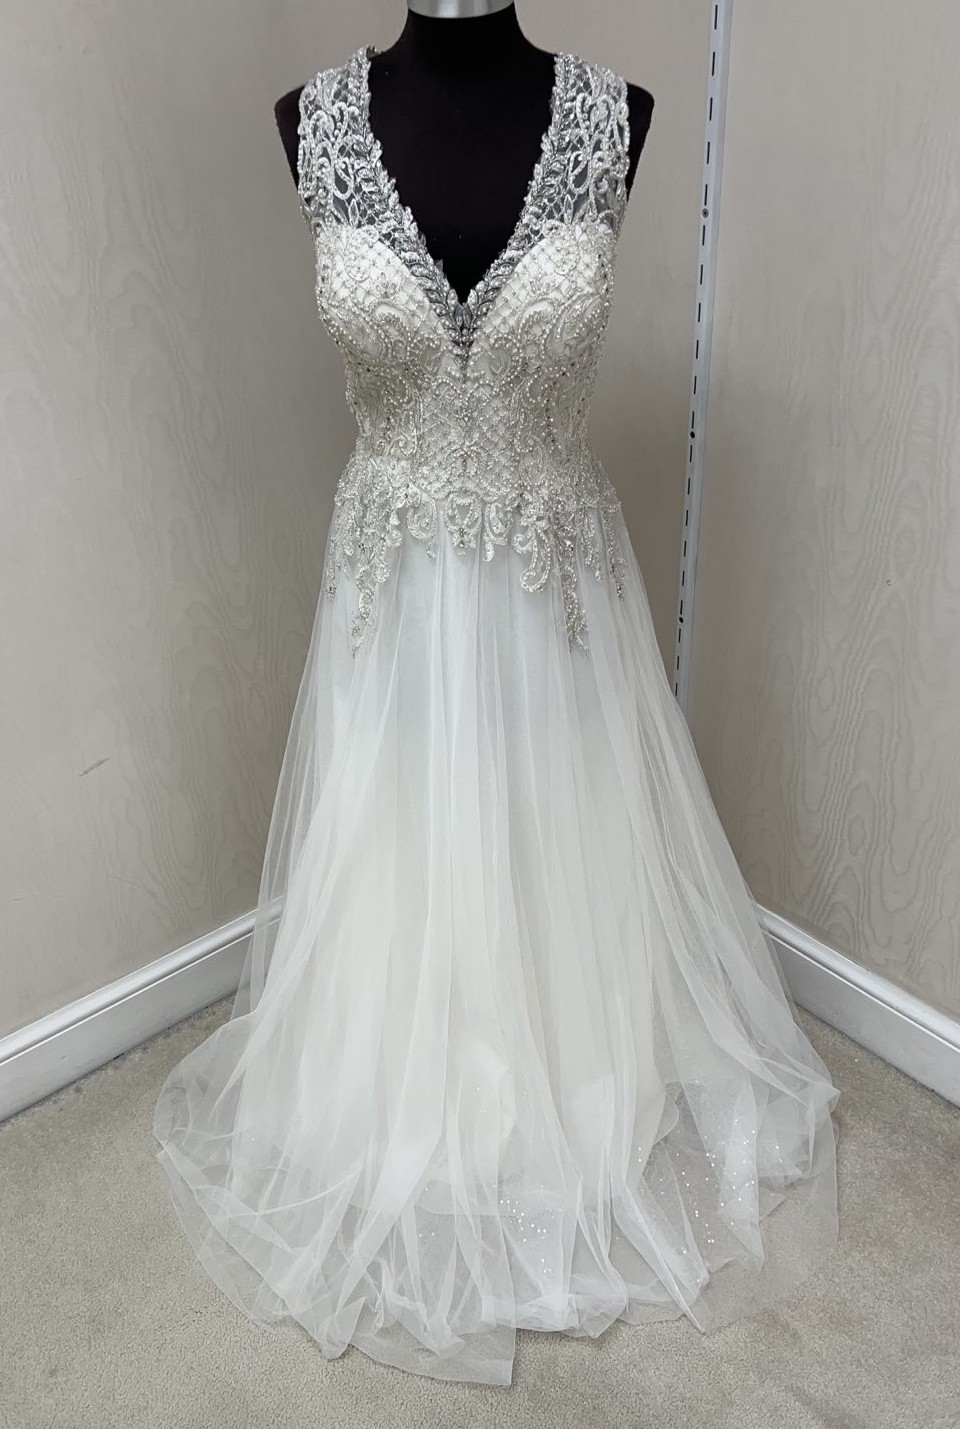 Allure Bridals W440 Sample Wedding Dress Save 67% - Stillwhite